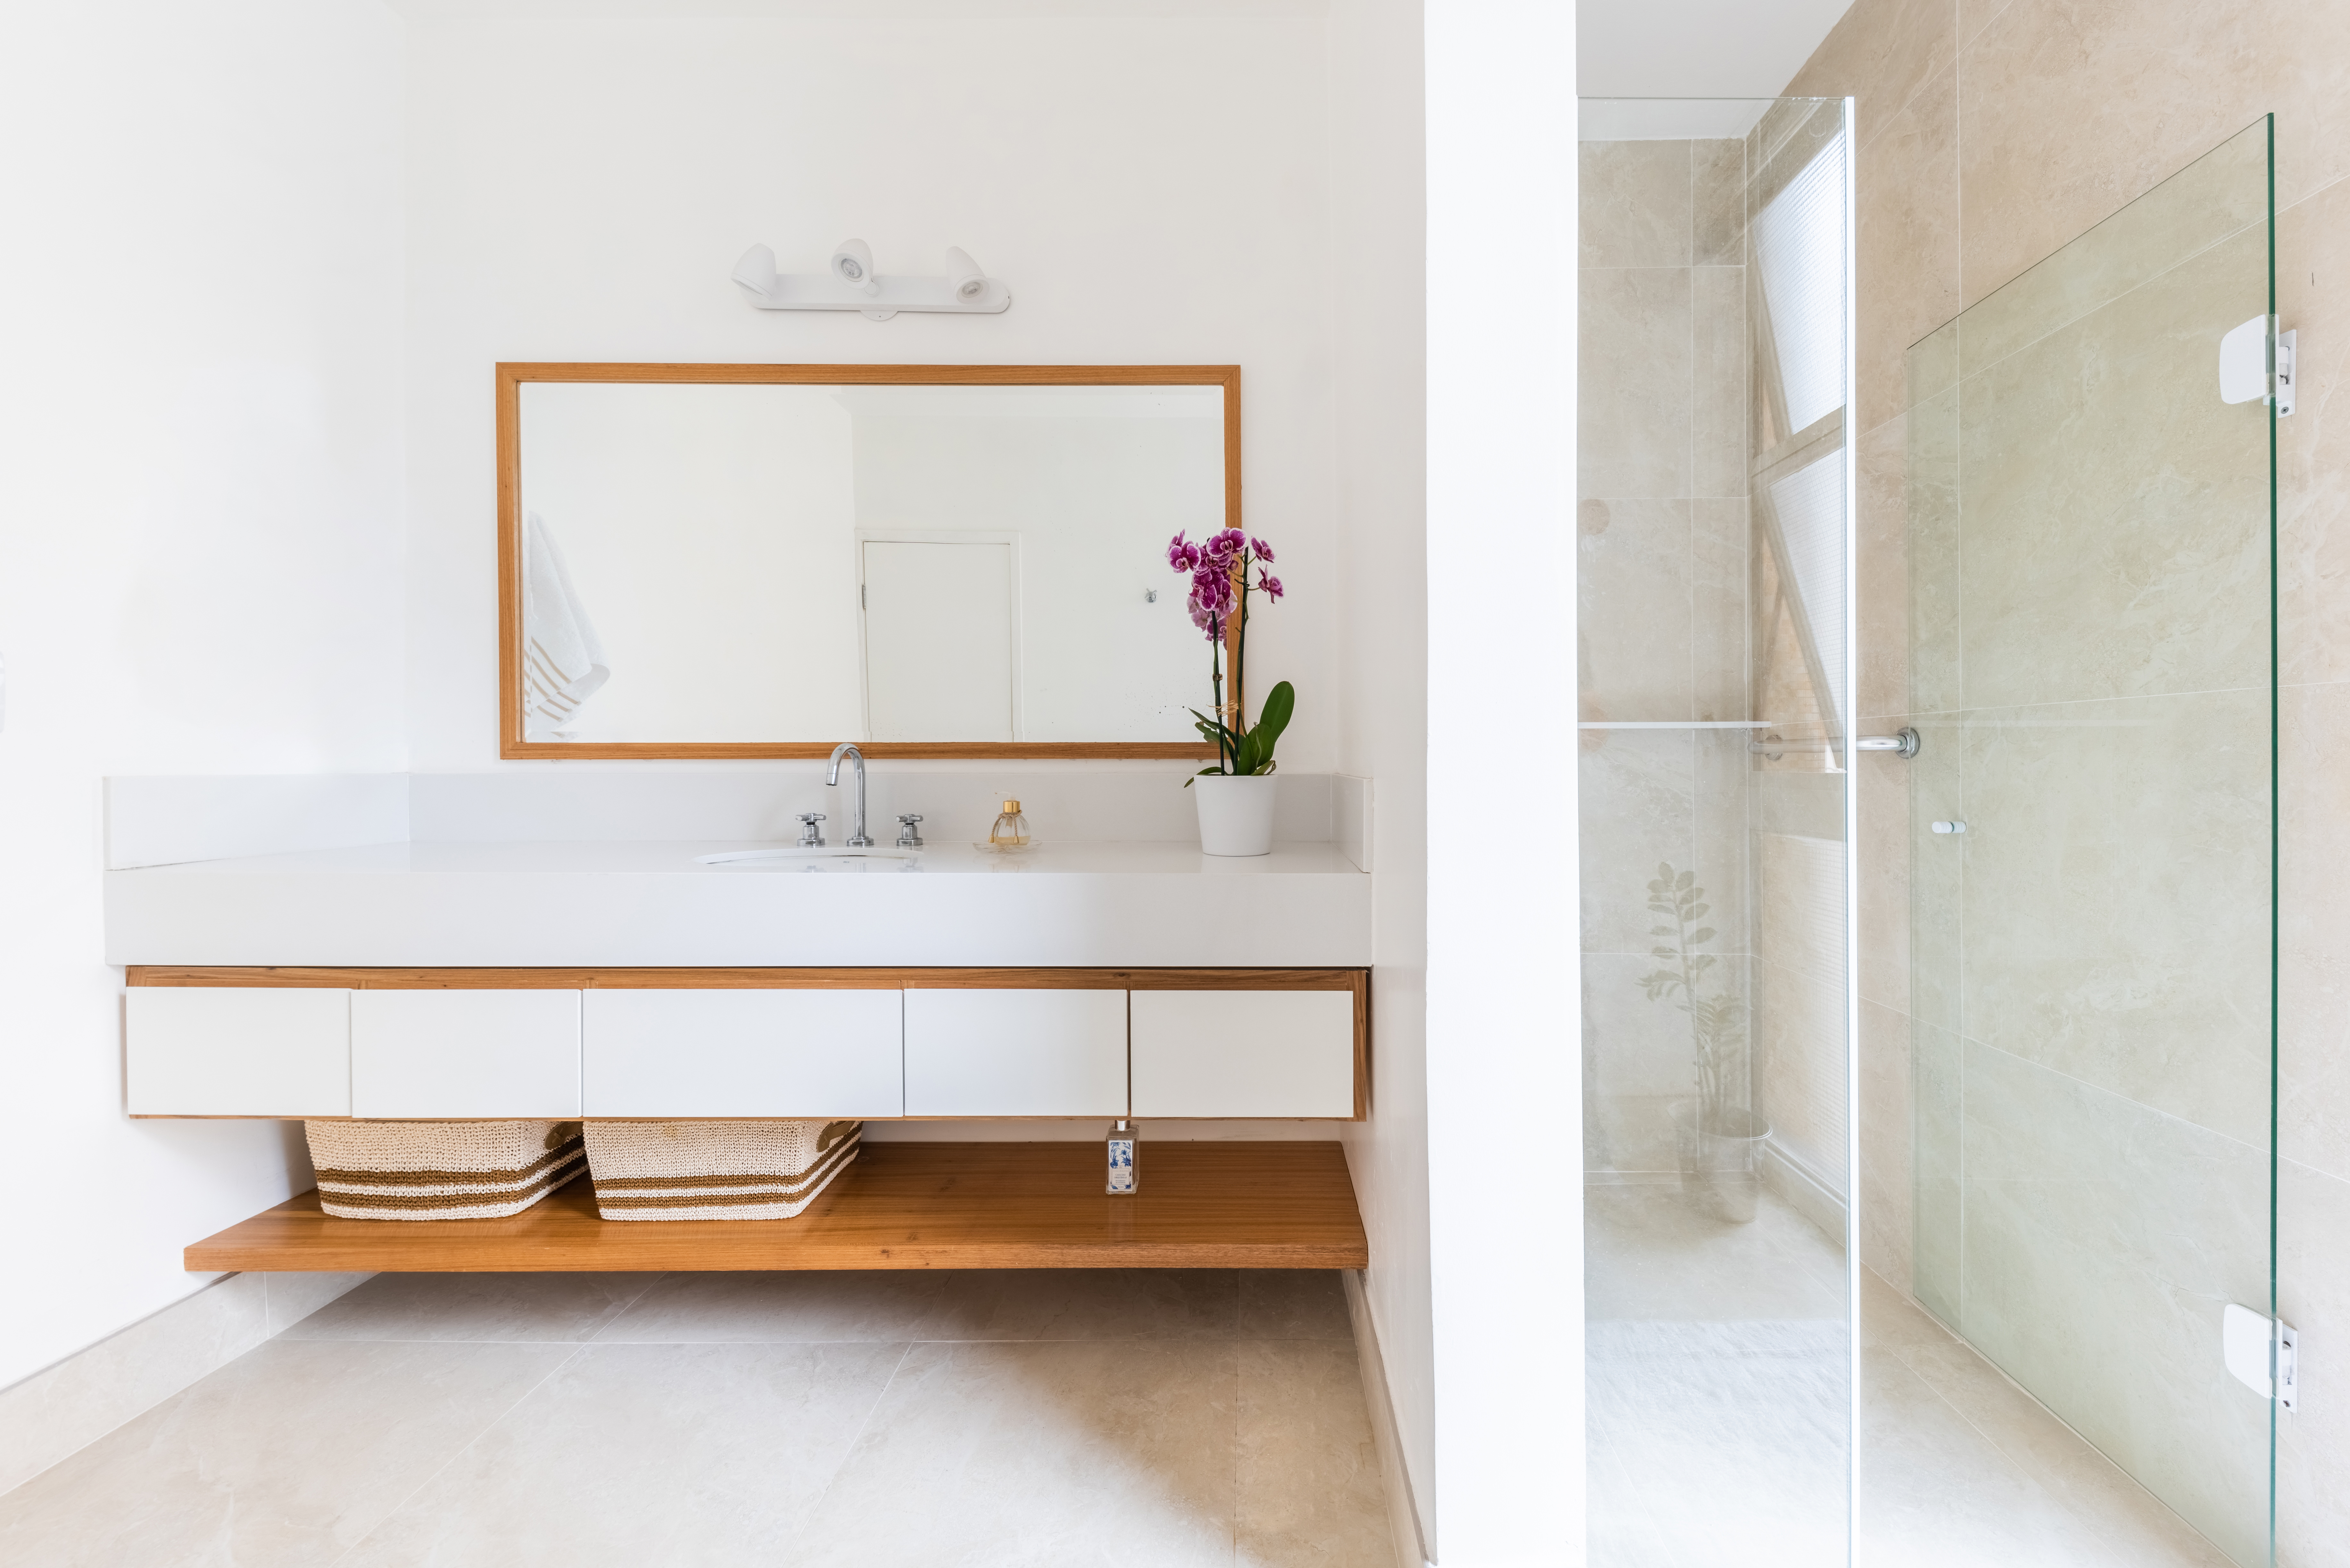 Banheiro - Apartamento Sergipe - Luis Canepa Arquitetos